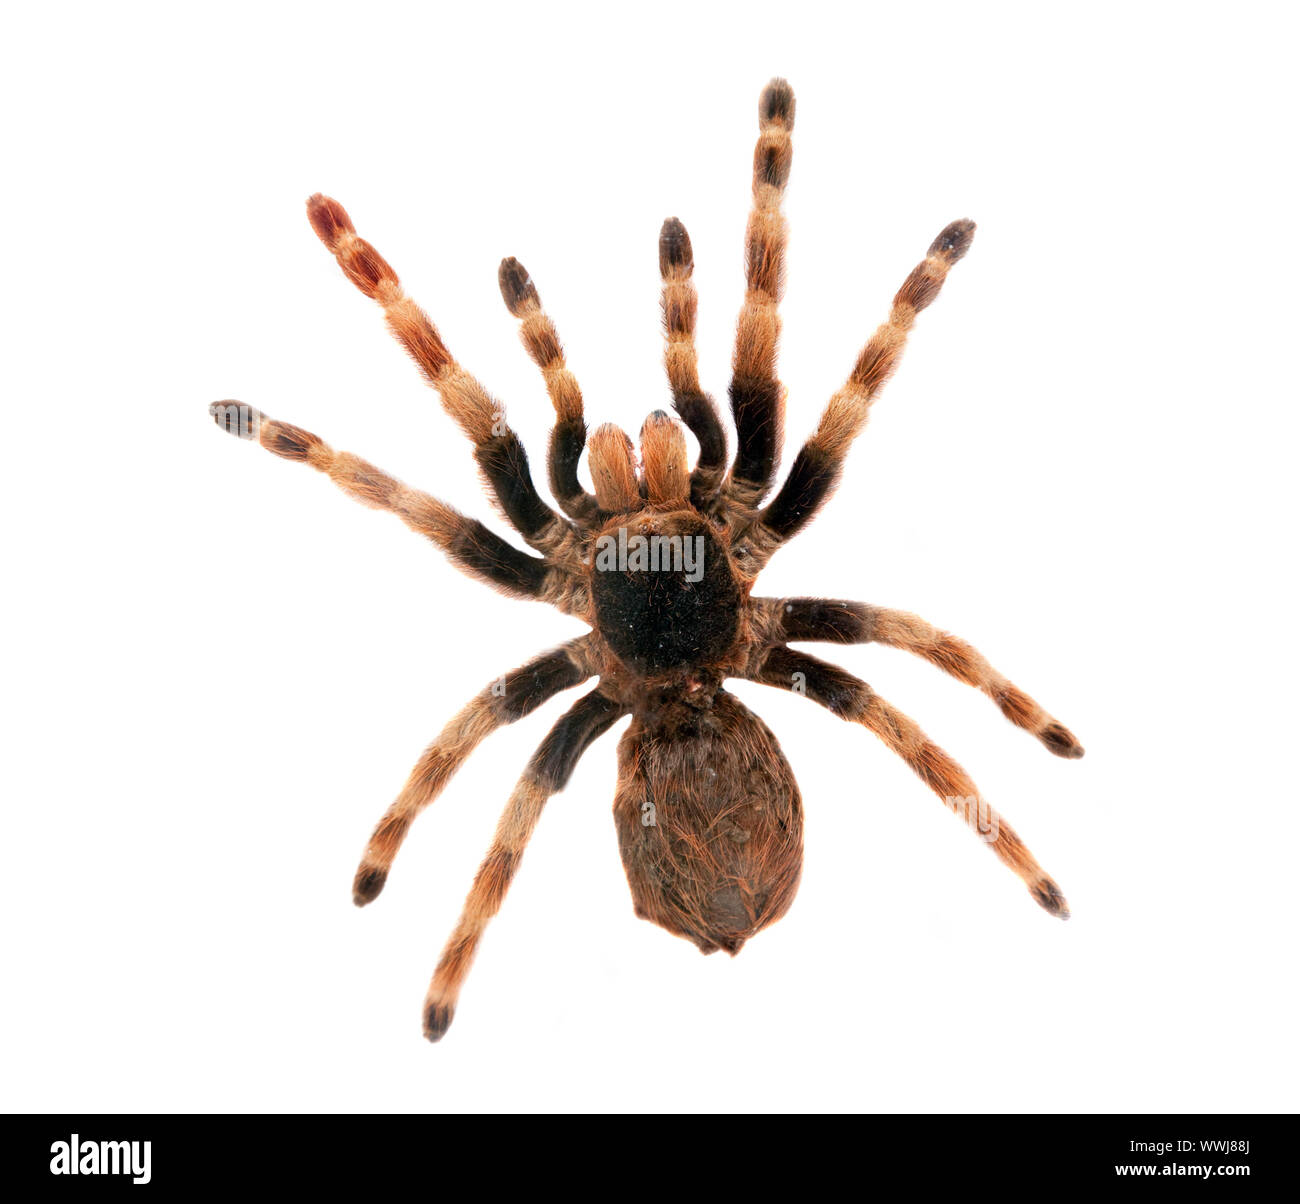 Große haarige Spinne isoliert auf Weiss. Ansicht von oben Stockfotografie -  Alamy